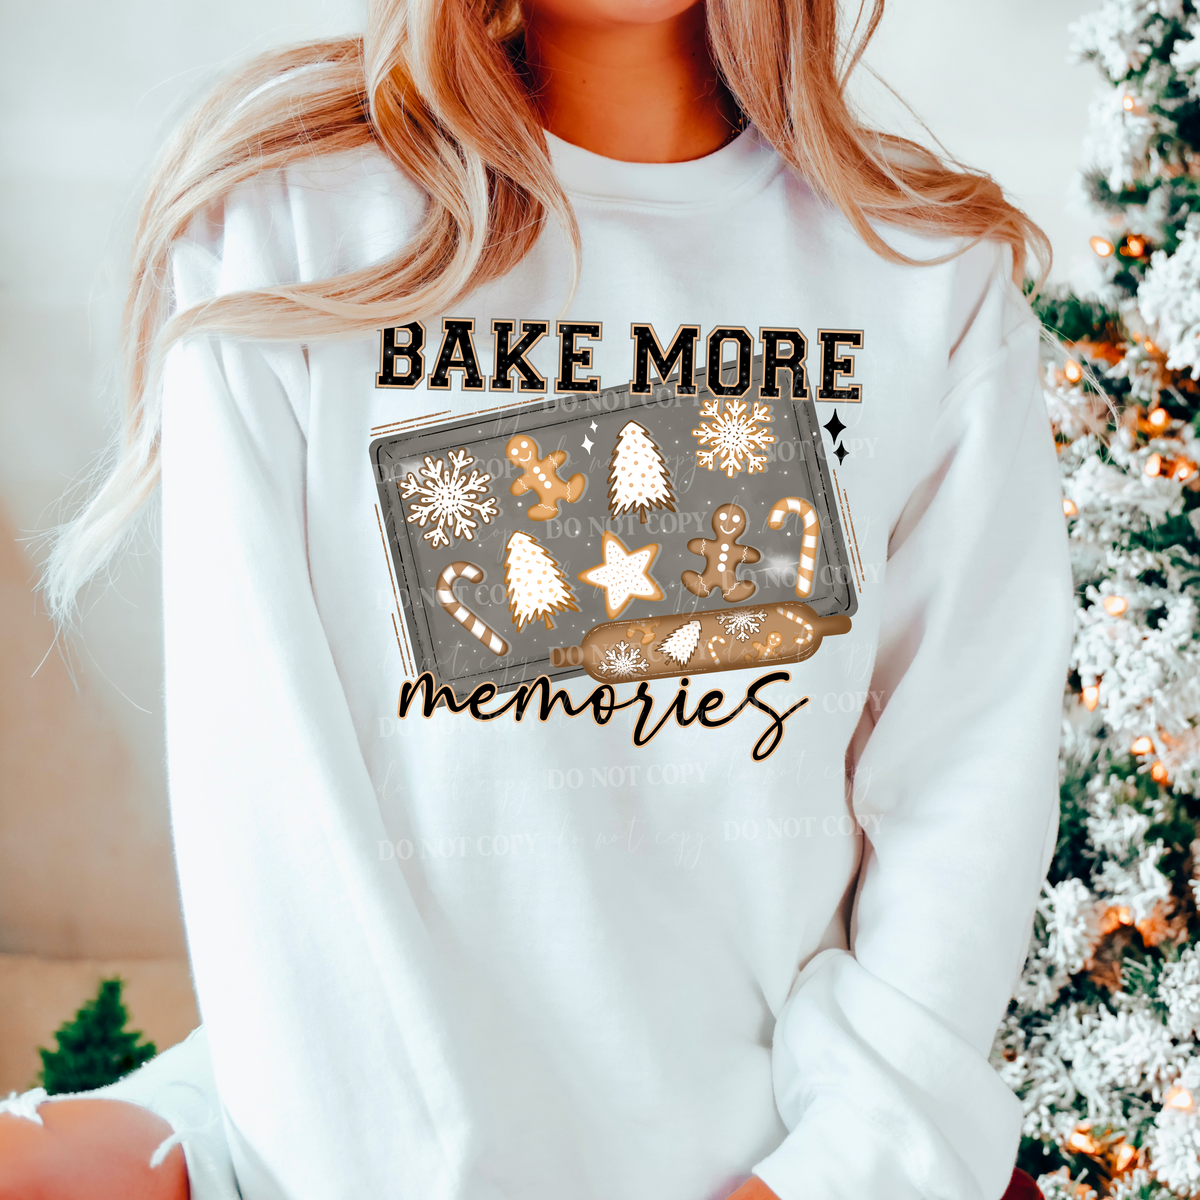 Bake more memories PNG